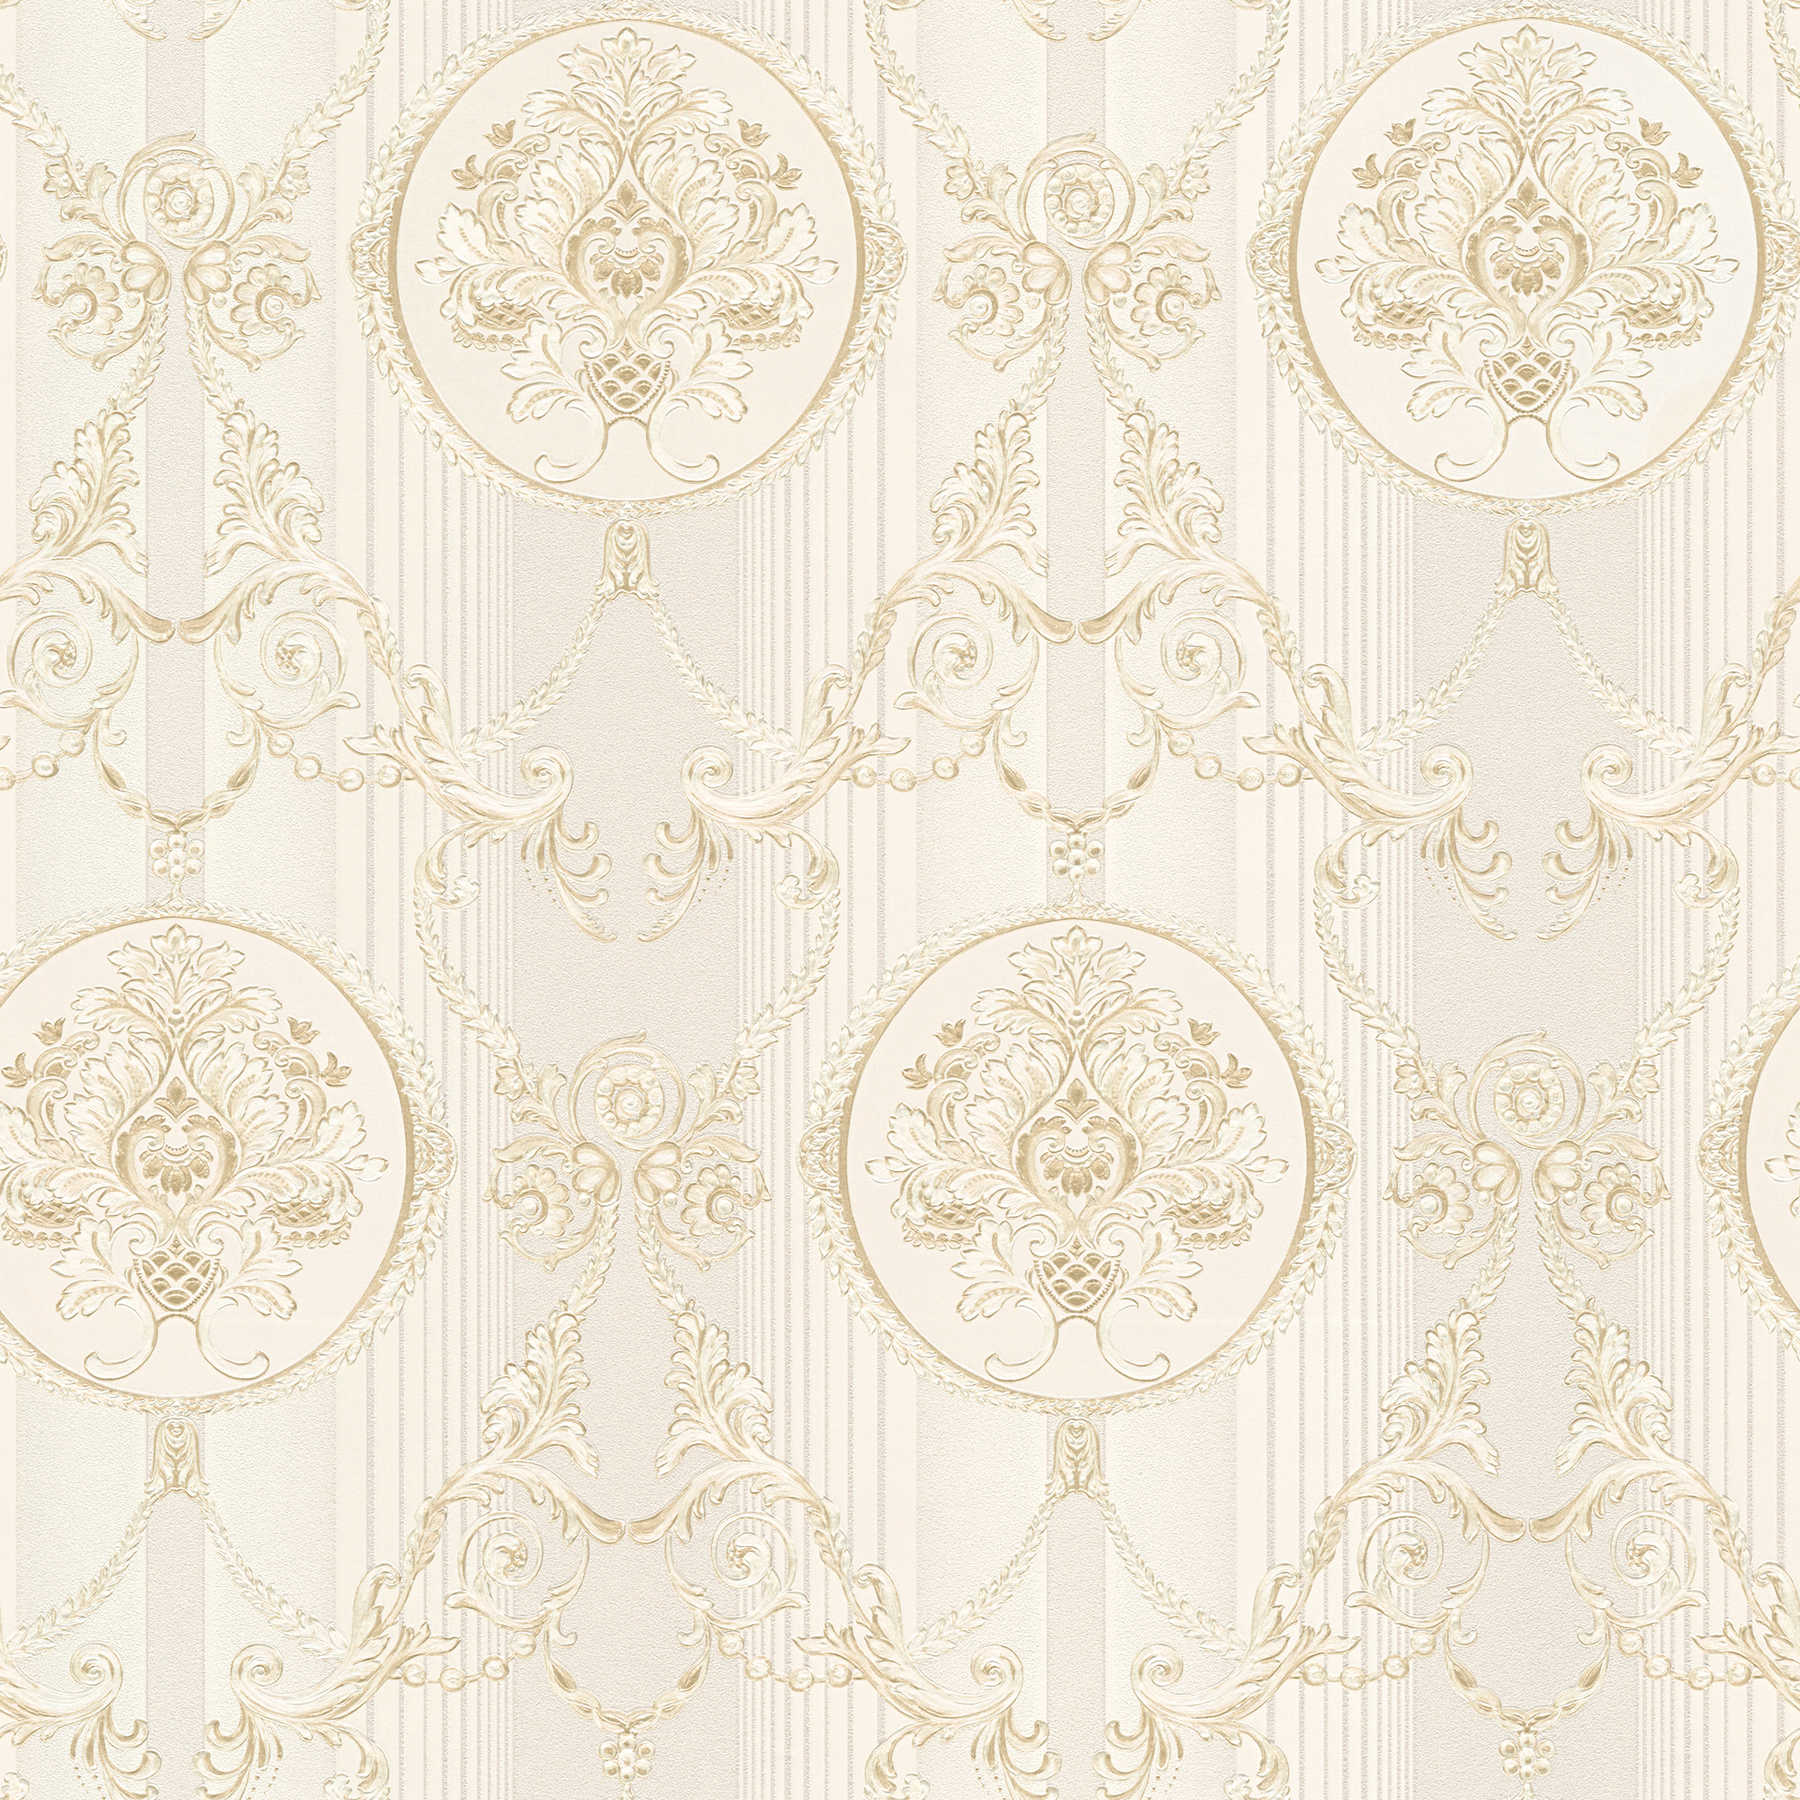 Neo baroque wallpaper with ornament & stripe pattern - cream
